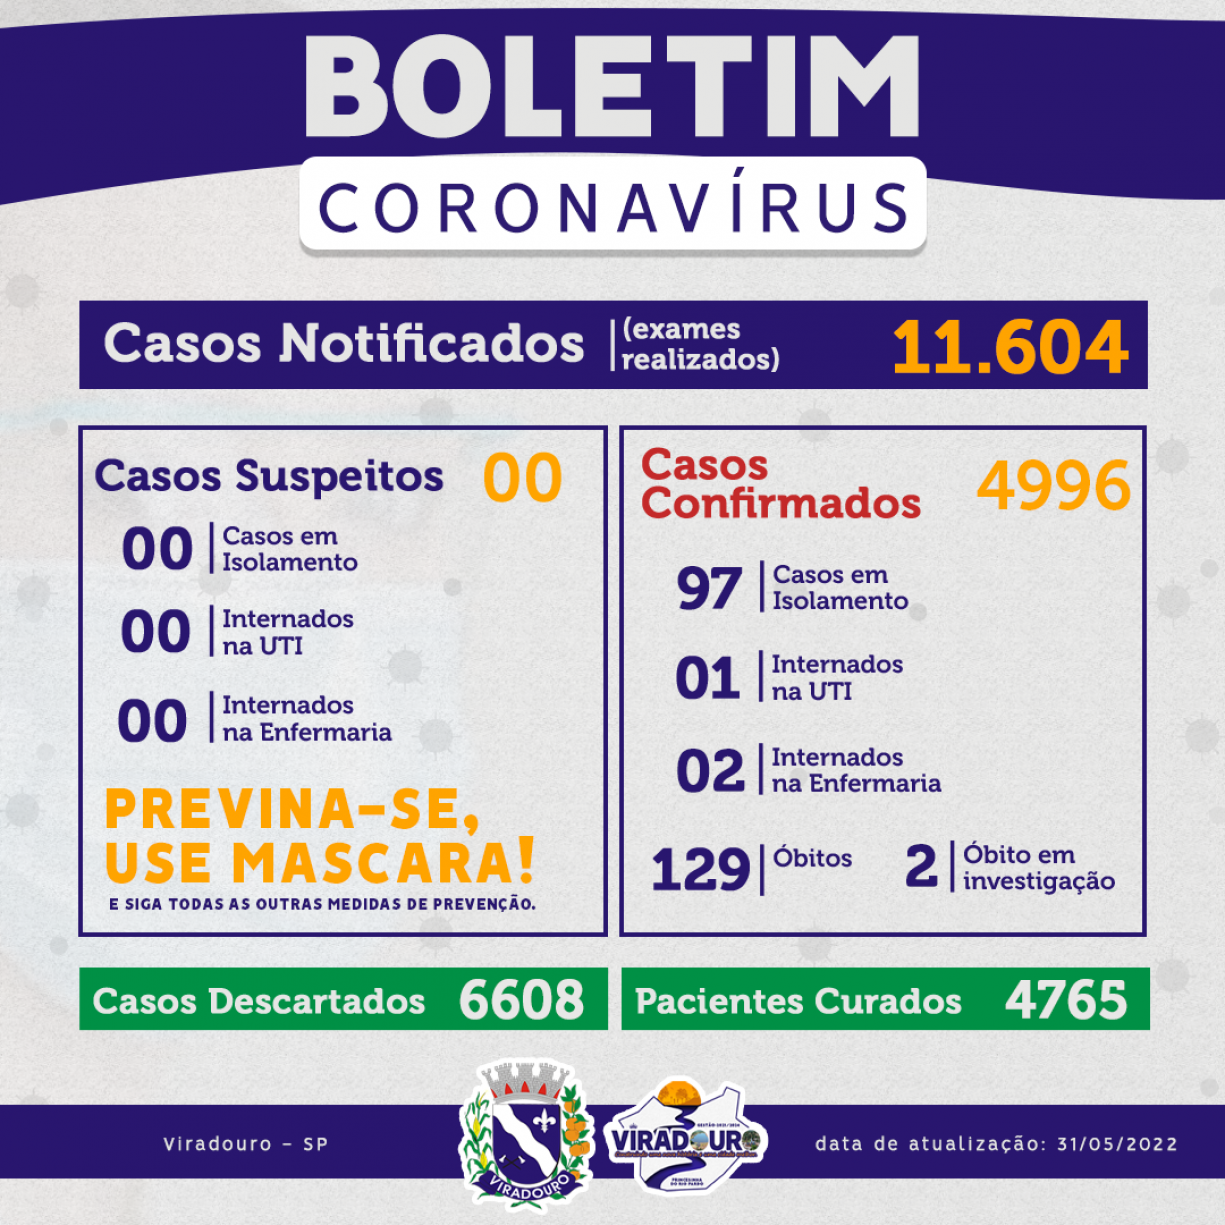 CORONAVÍRUS: BOLETIM EPIDEMIOLÓGICO (ATUALIZAÇÃO 31/05/2022)